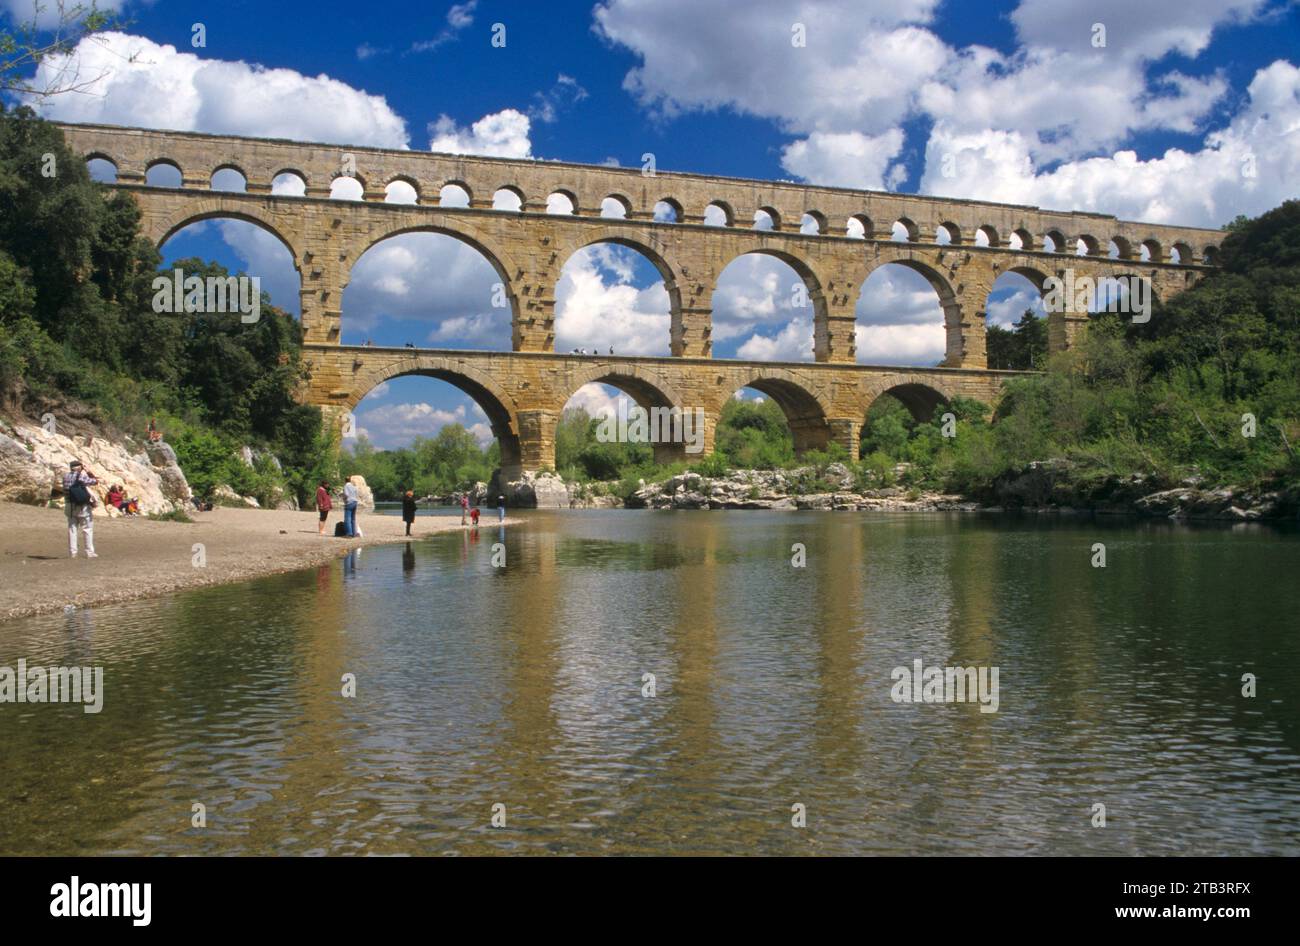 Römisches Aquädukt Pont du Gard bei Remoulins, Frankreich, Provence - Roman aqueduct Pont du Gard near Remoulins, France, Provence Stock Photo